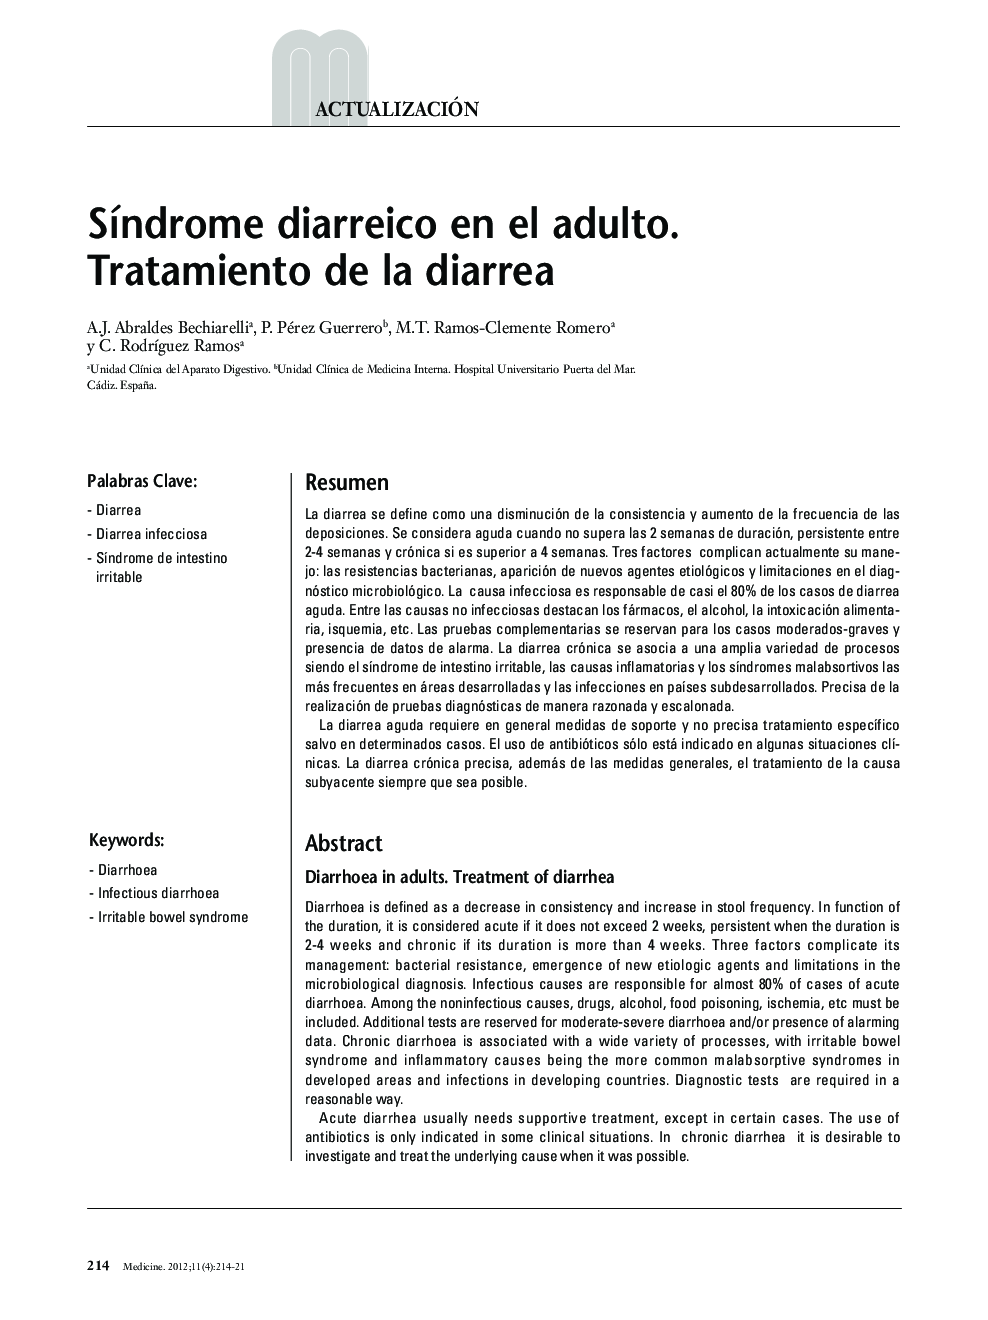 Síndrome diarreico en el adulto. Tratamiento de la diarrea